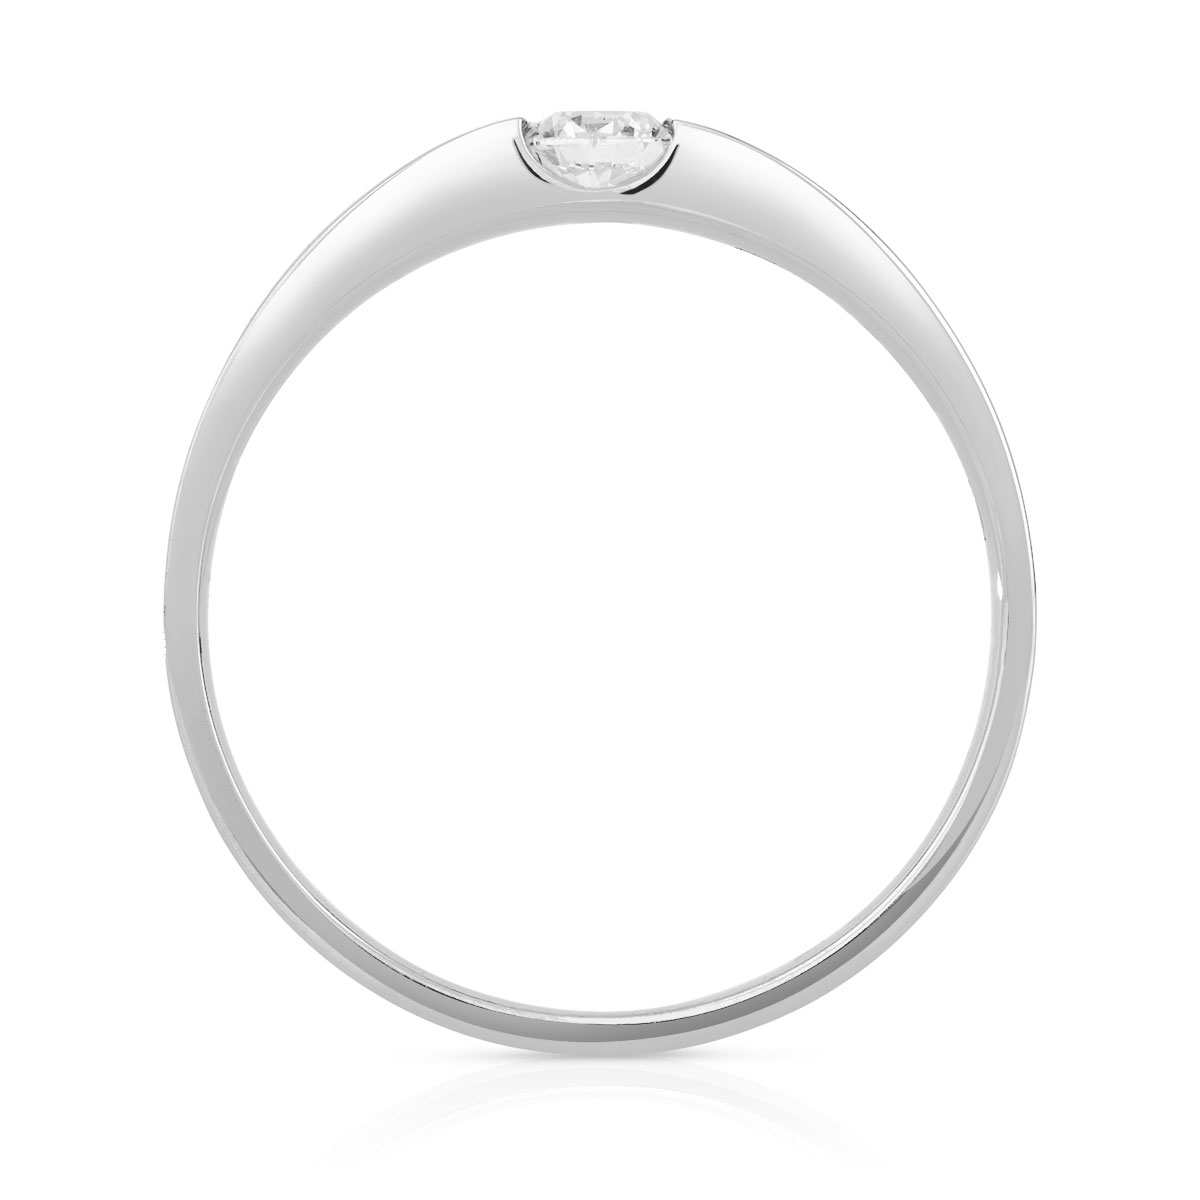 Bague solitaire or 750 blanc diamant synthétique 0.15 carat - vue 2